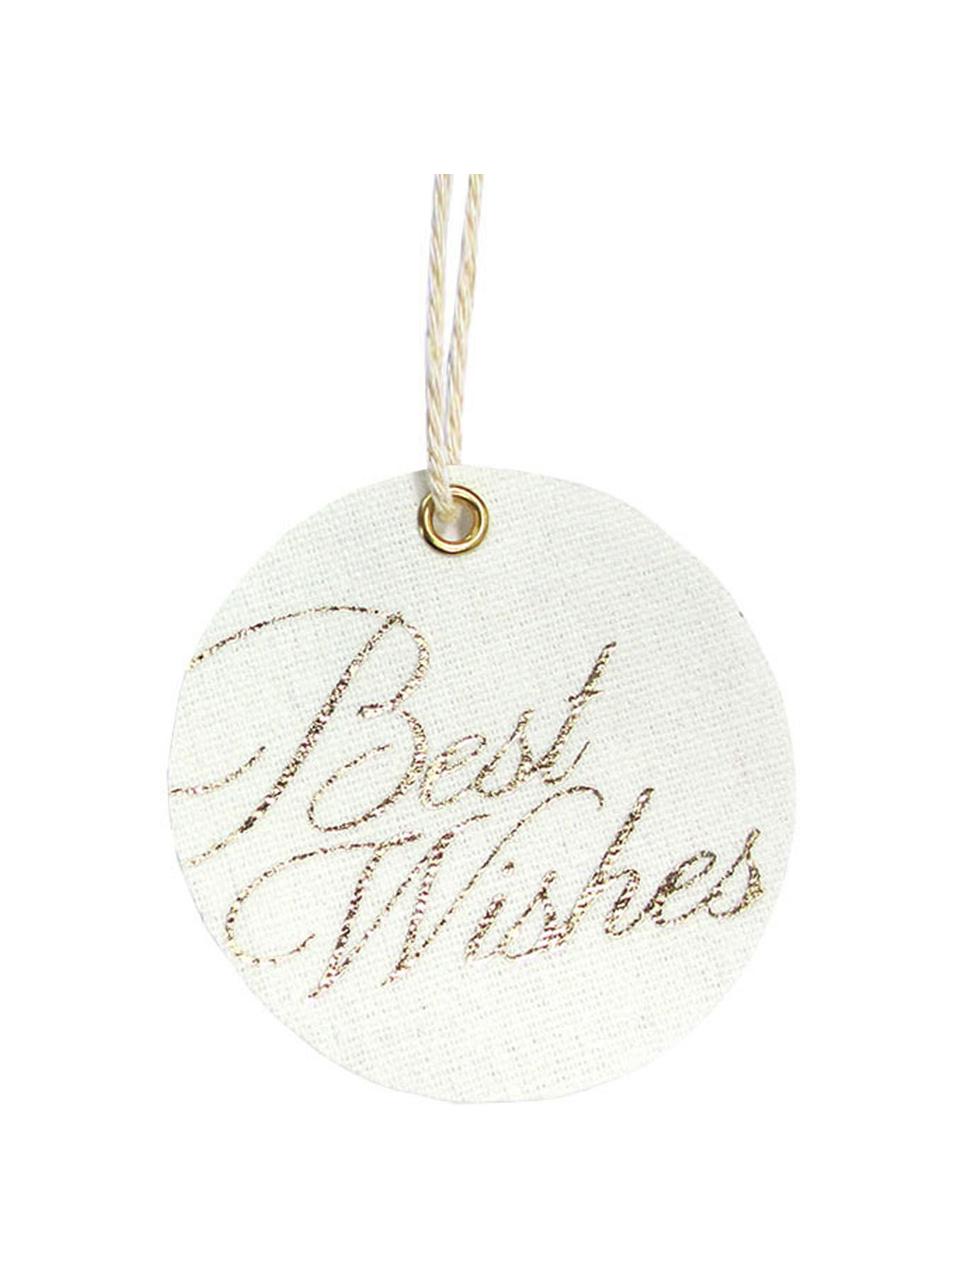 Geschenkanhänger-Set Best Wishes, 6 Stück, 60% Baumwolle, 40% Polyester, Weiß, Goldfarben, Ø 6 x H 6 cm